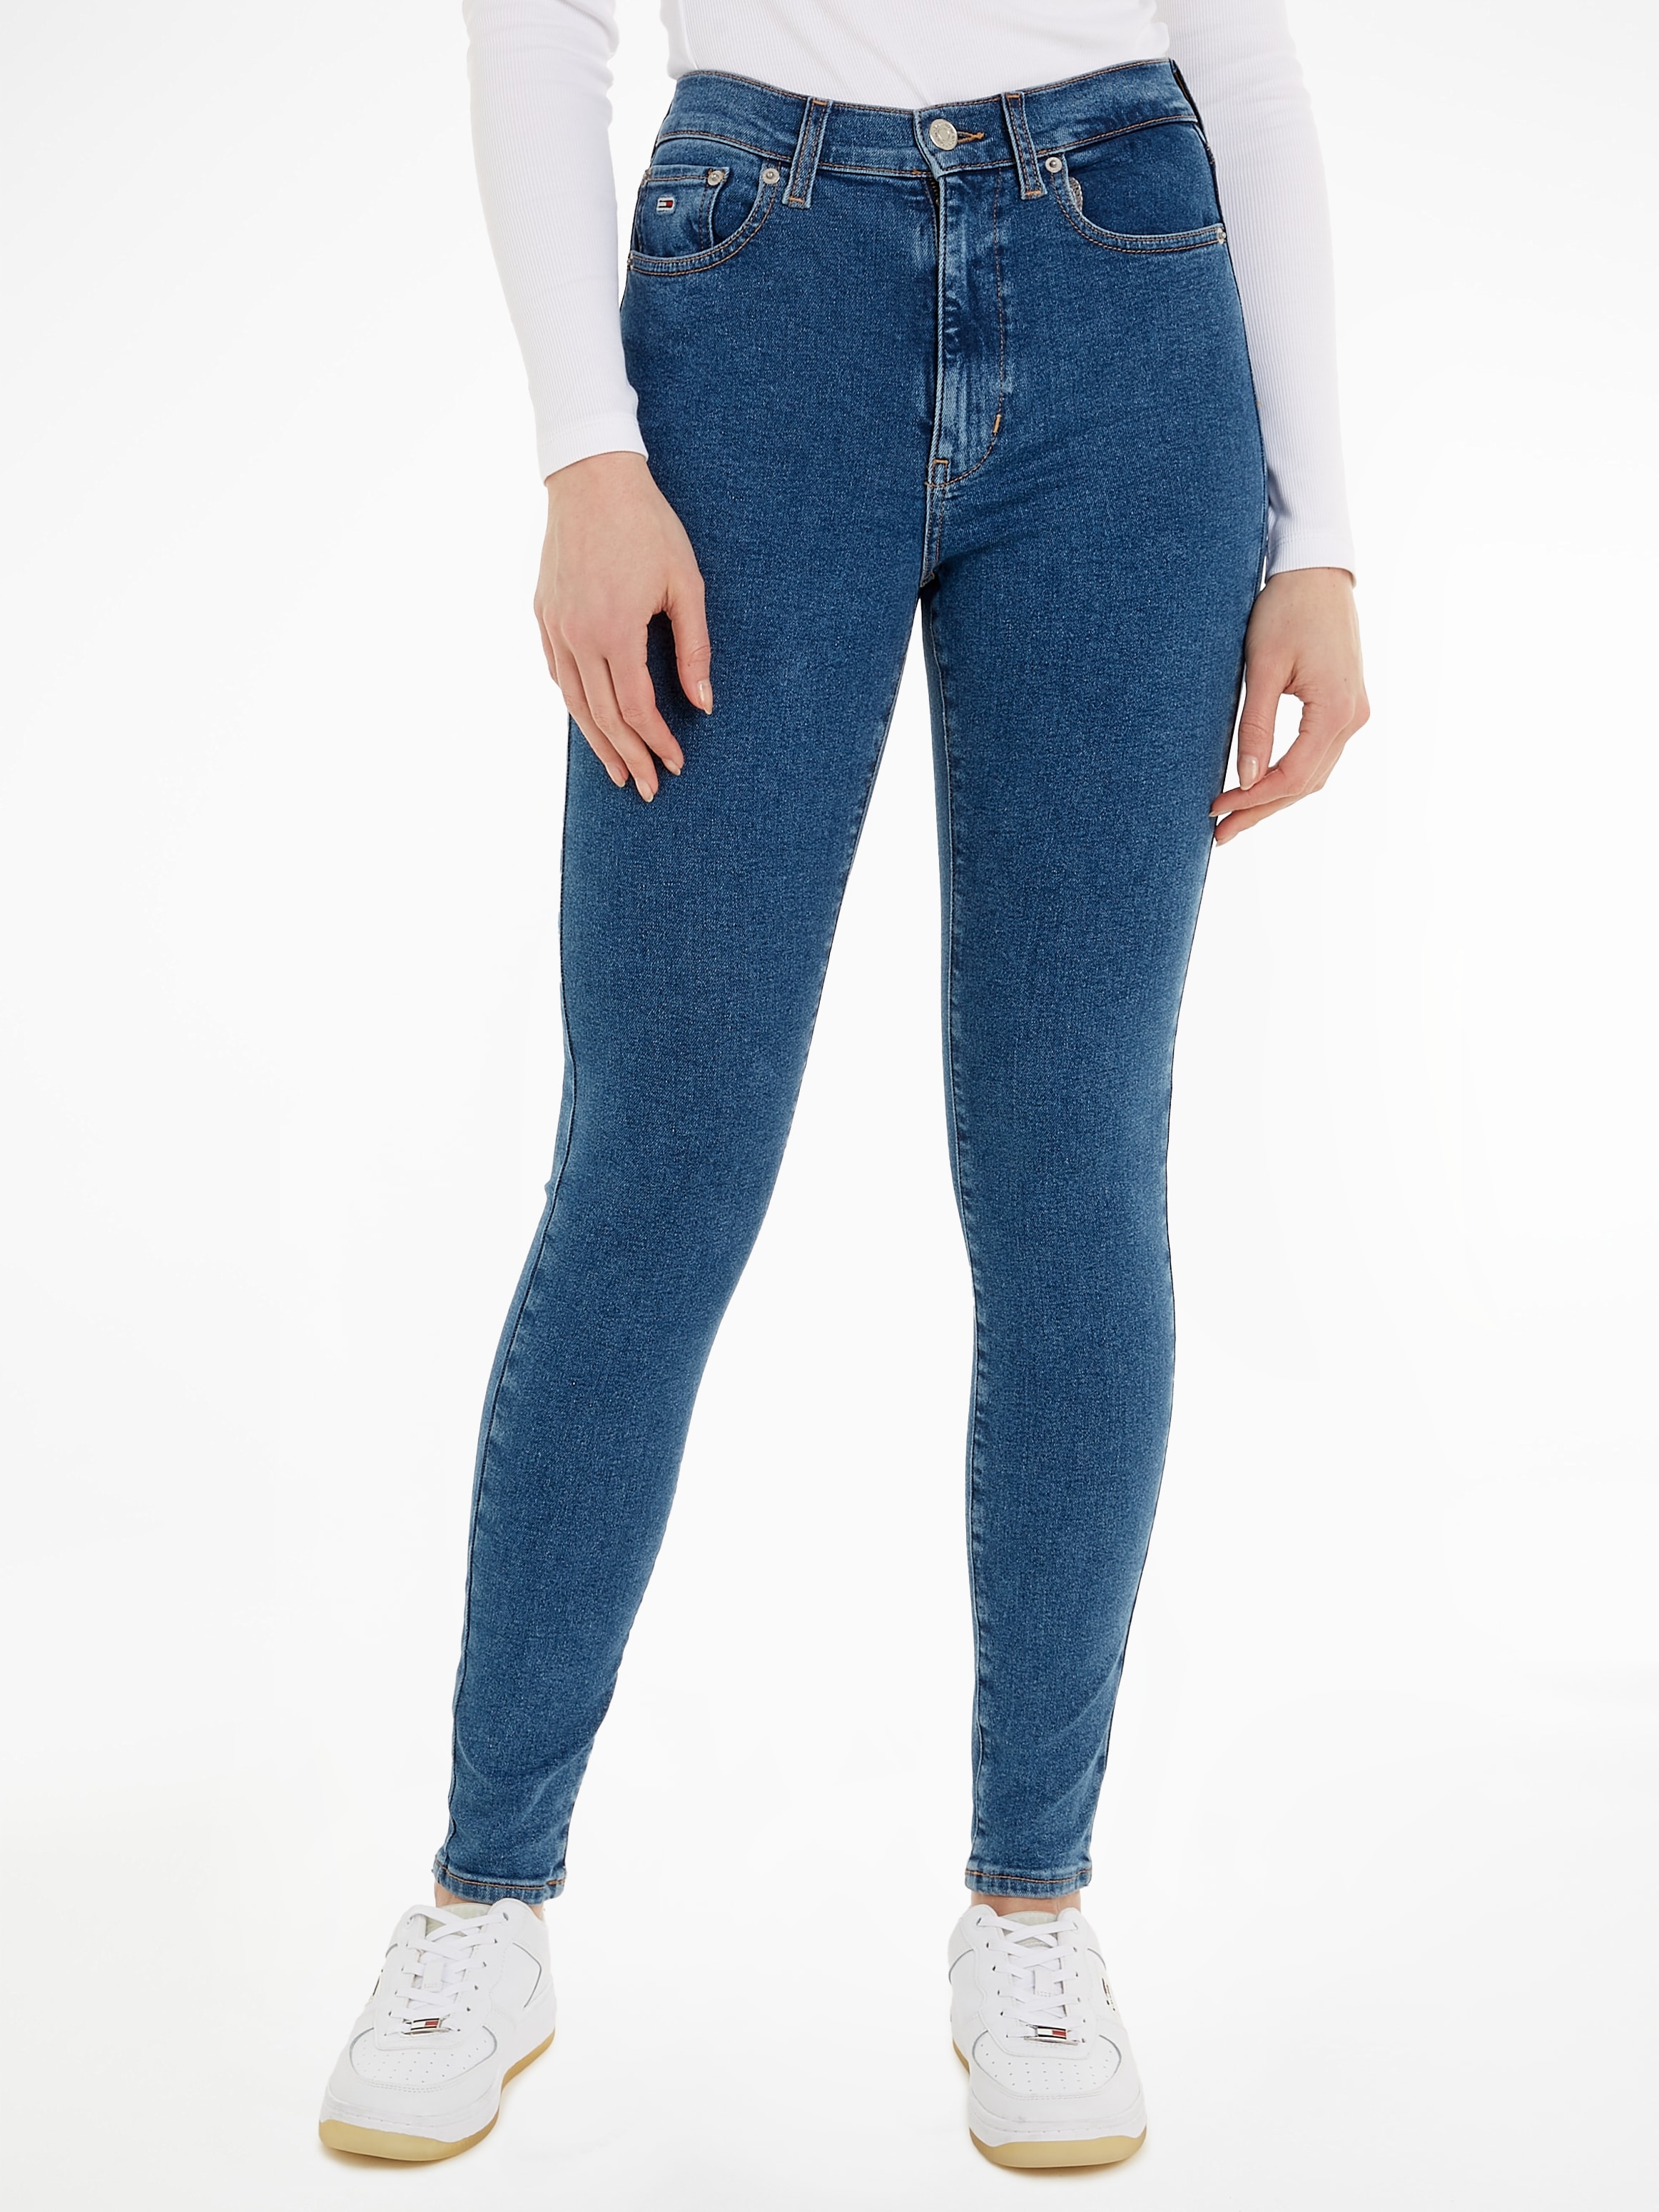 Jeans kaufen OTTO Ledermarkenlabel »Sylvia«, Bequeme bei Tommy online Jeans mit